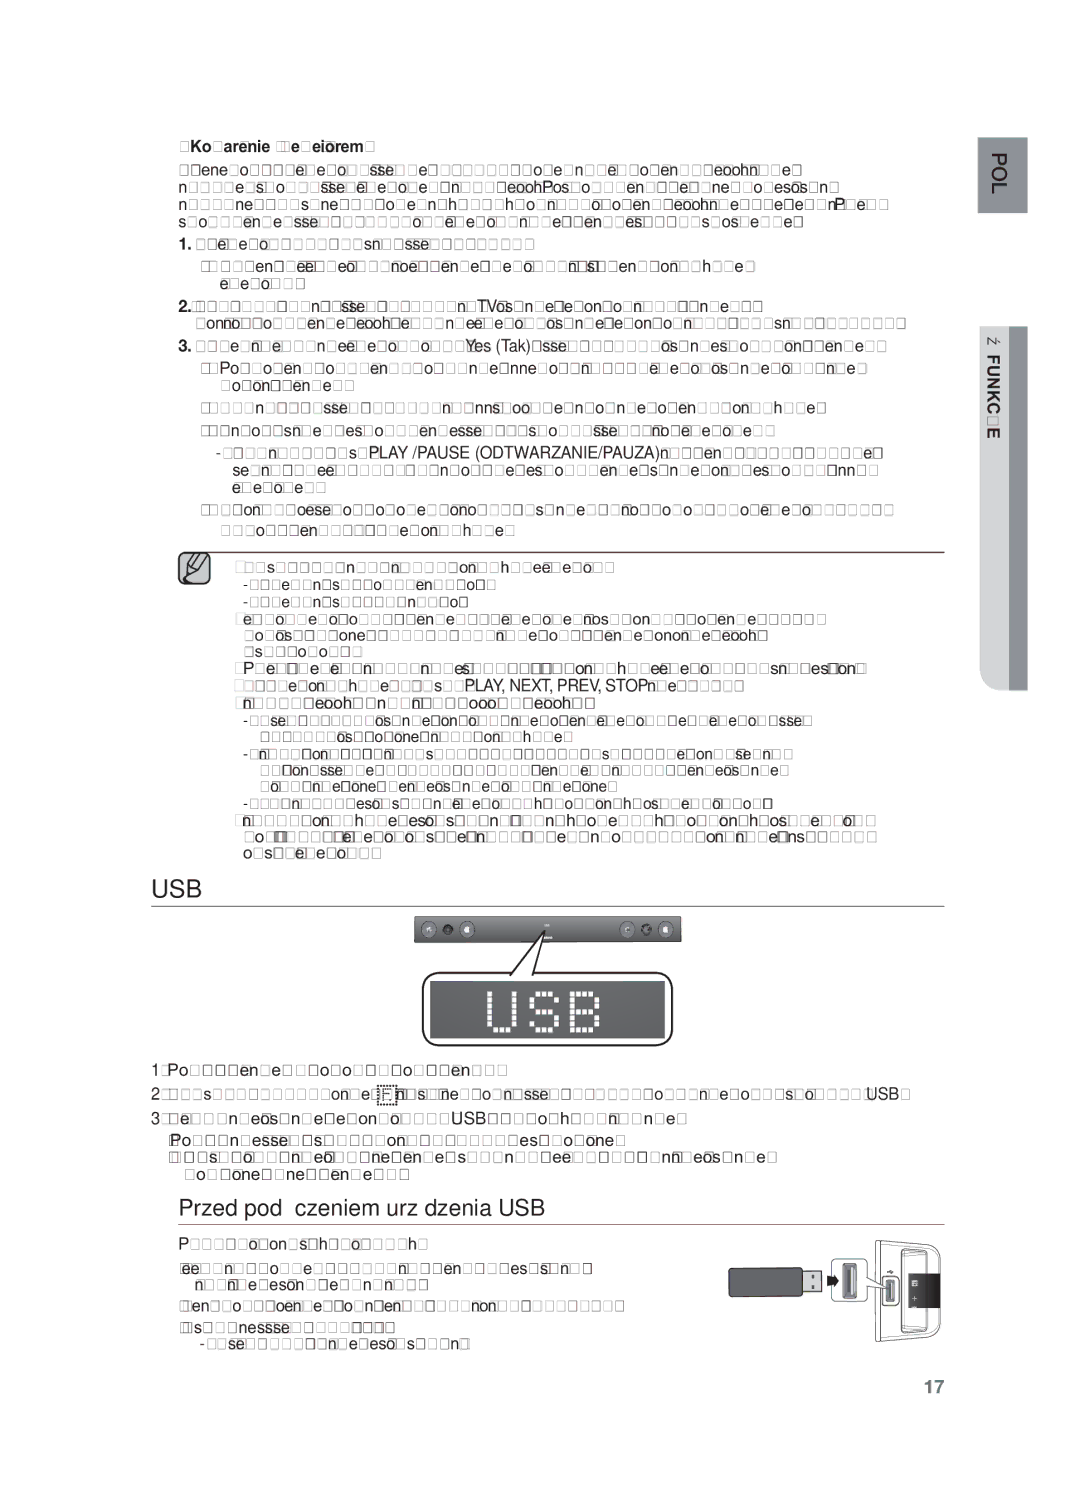 Samsung HW-F450/XE, HW-F450/EN manual Usb, Przed podłączeniem urządzenia USB, Kojarzenie z telewizorem 